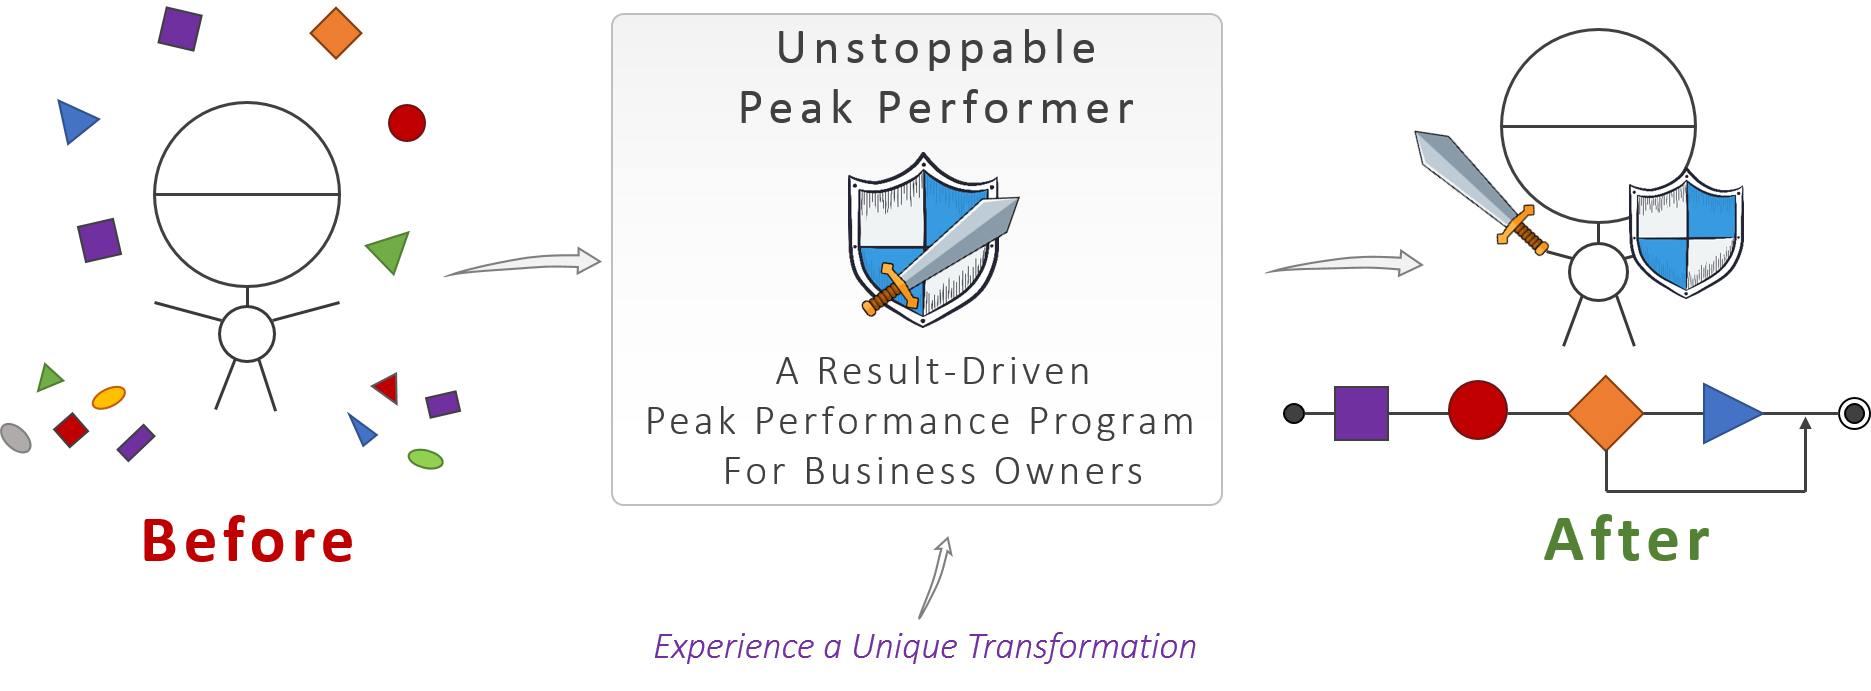 Unstoppable Peak Performer Program